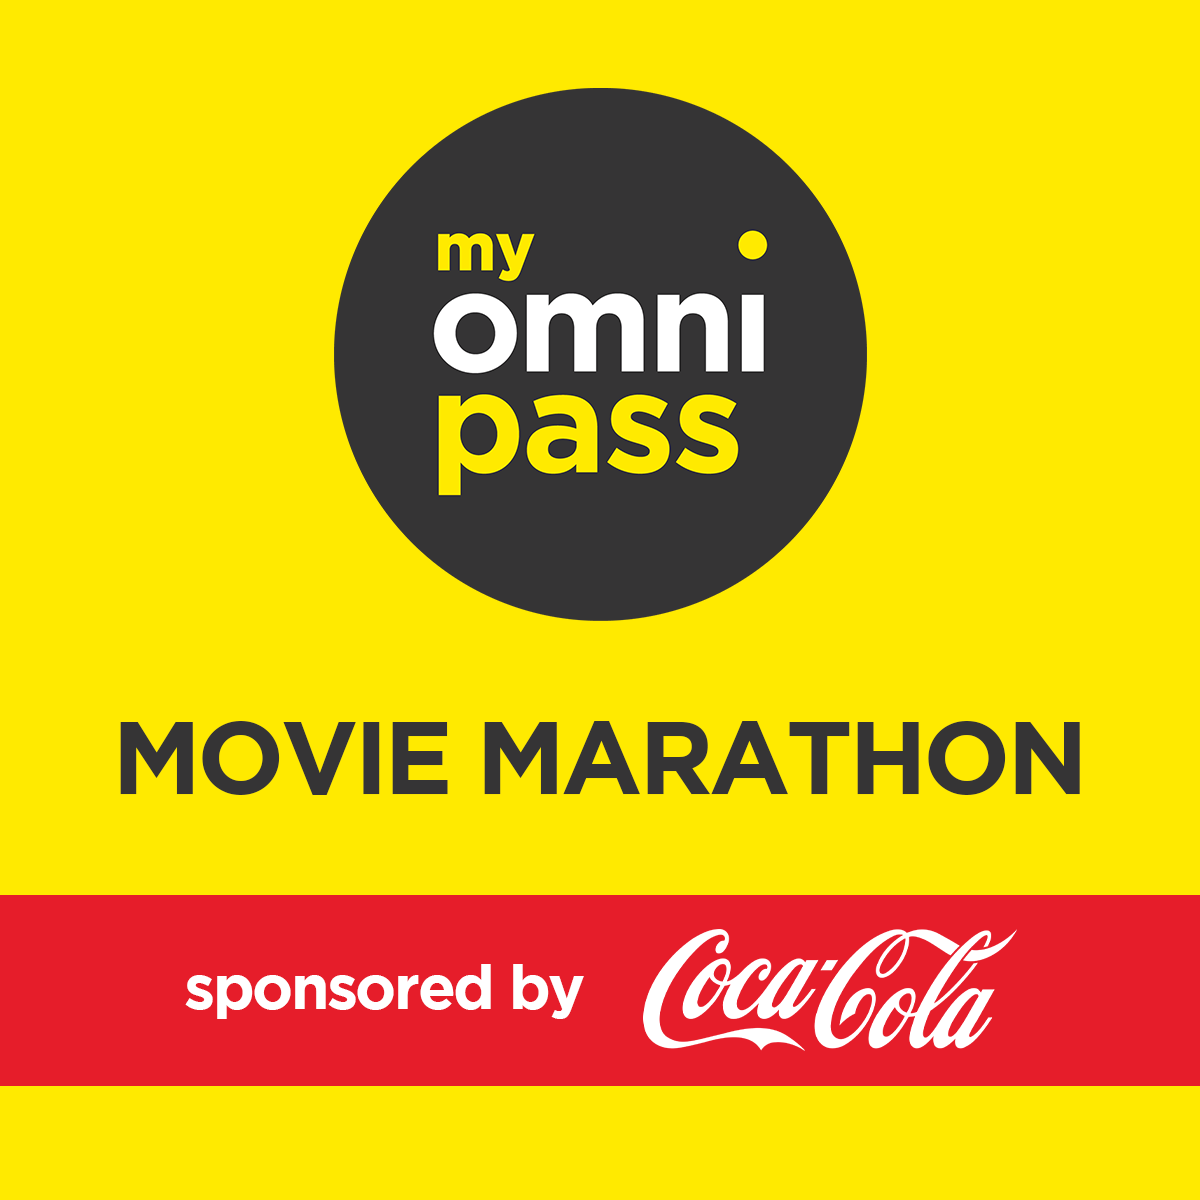 MyOmniPass Movie Marathon